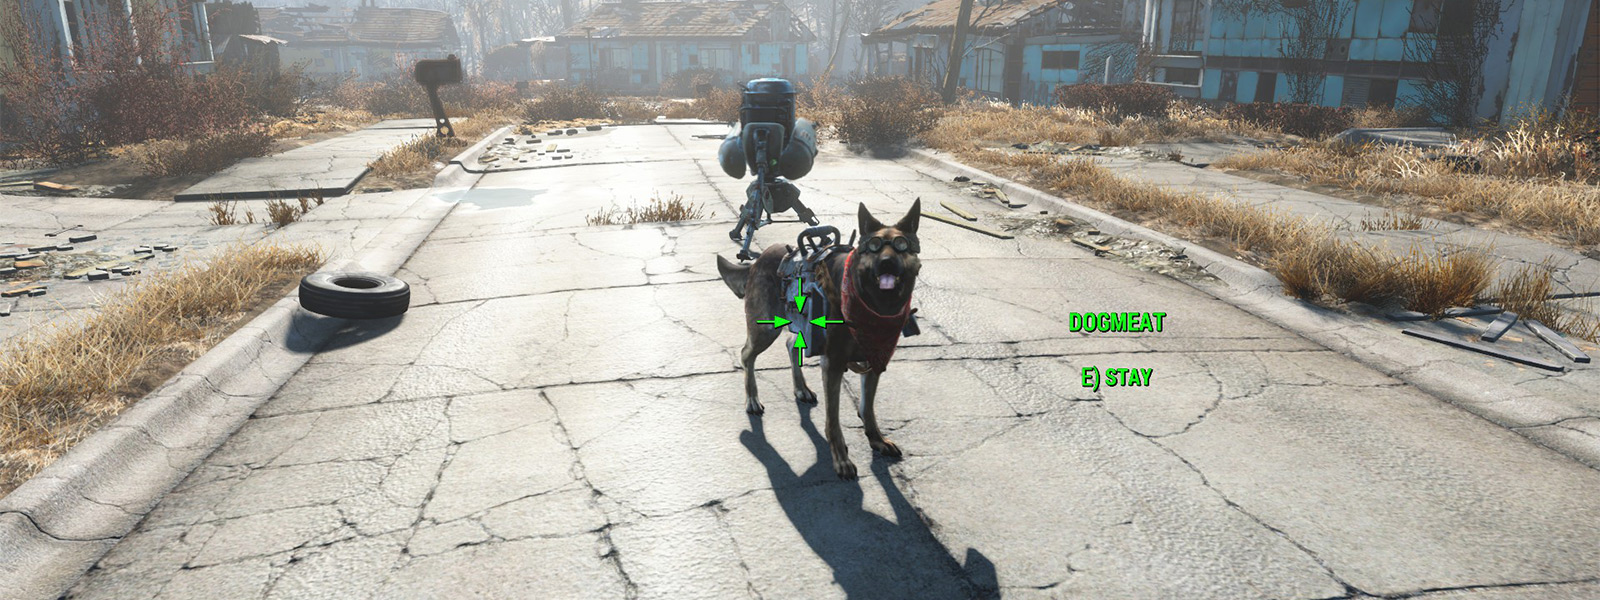 Как найти потерянную собаку Псину в Fallout 4?